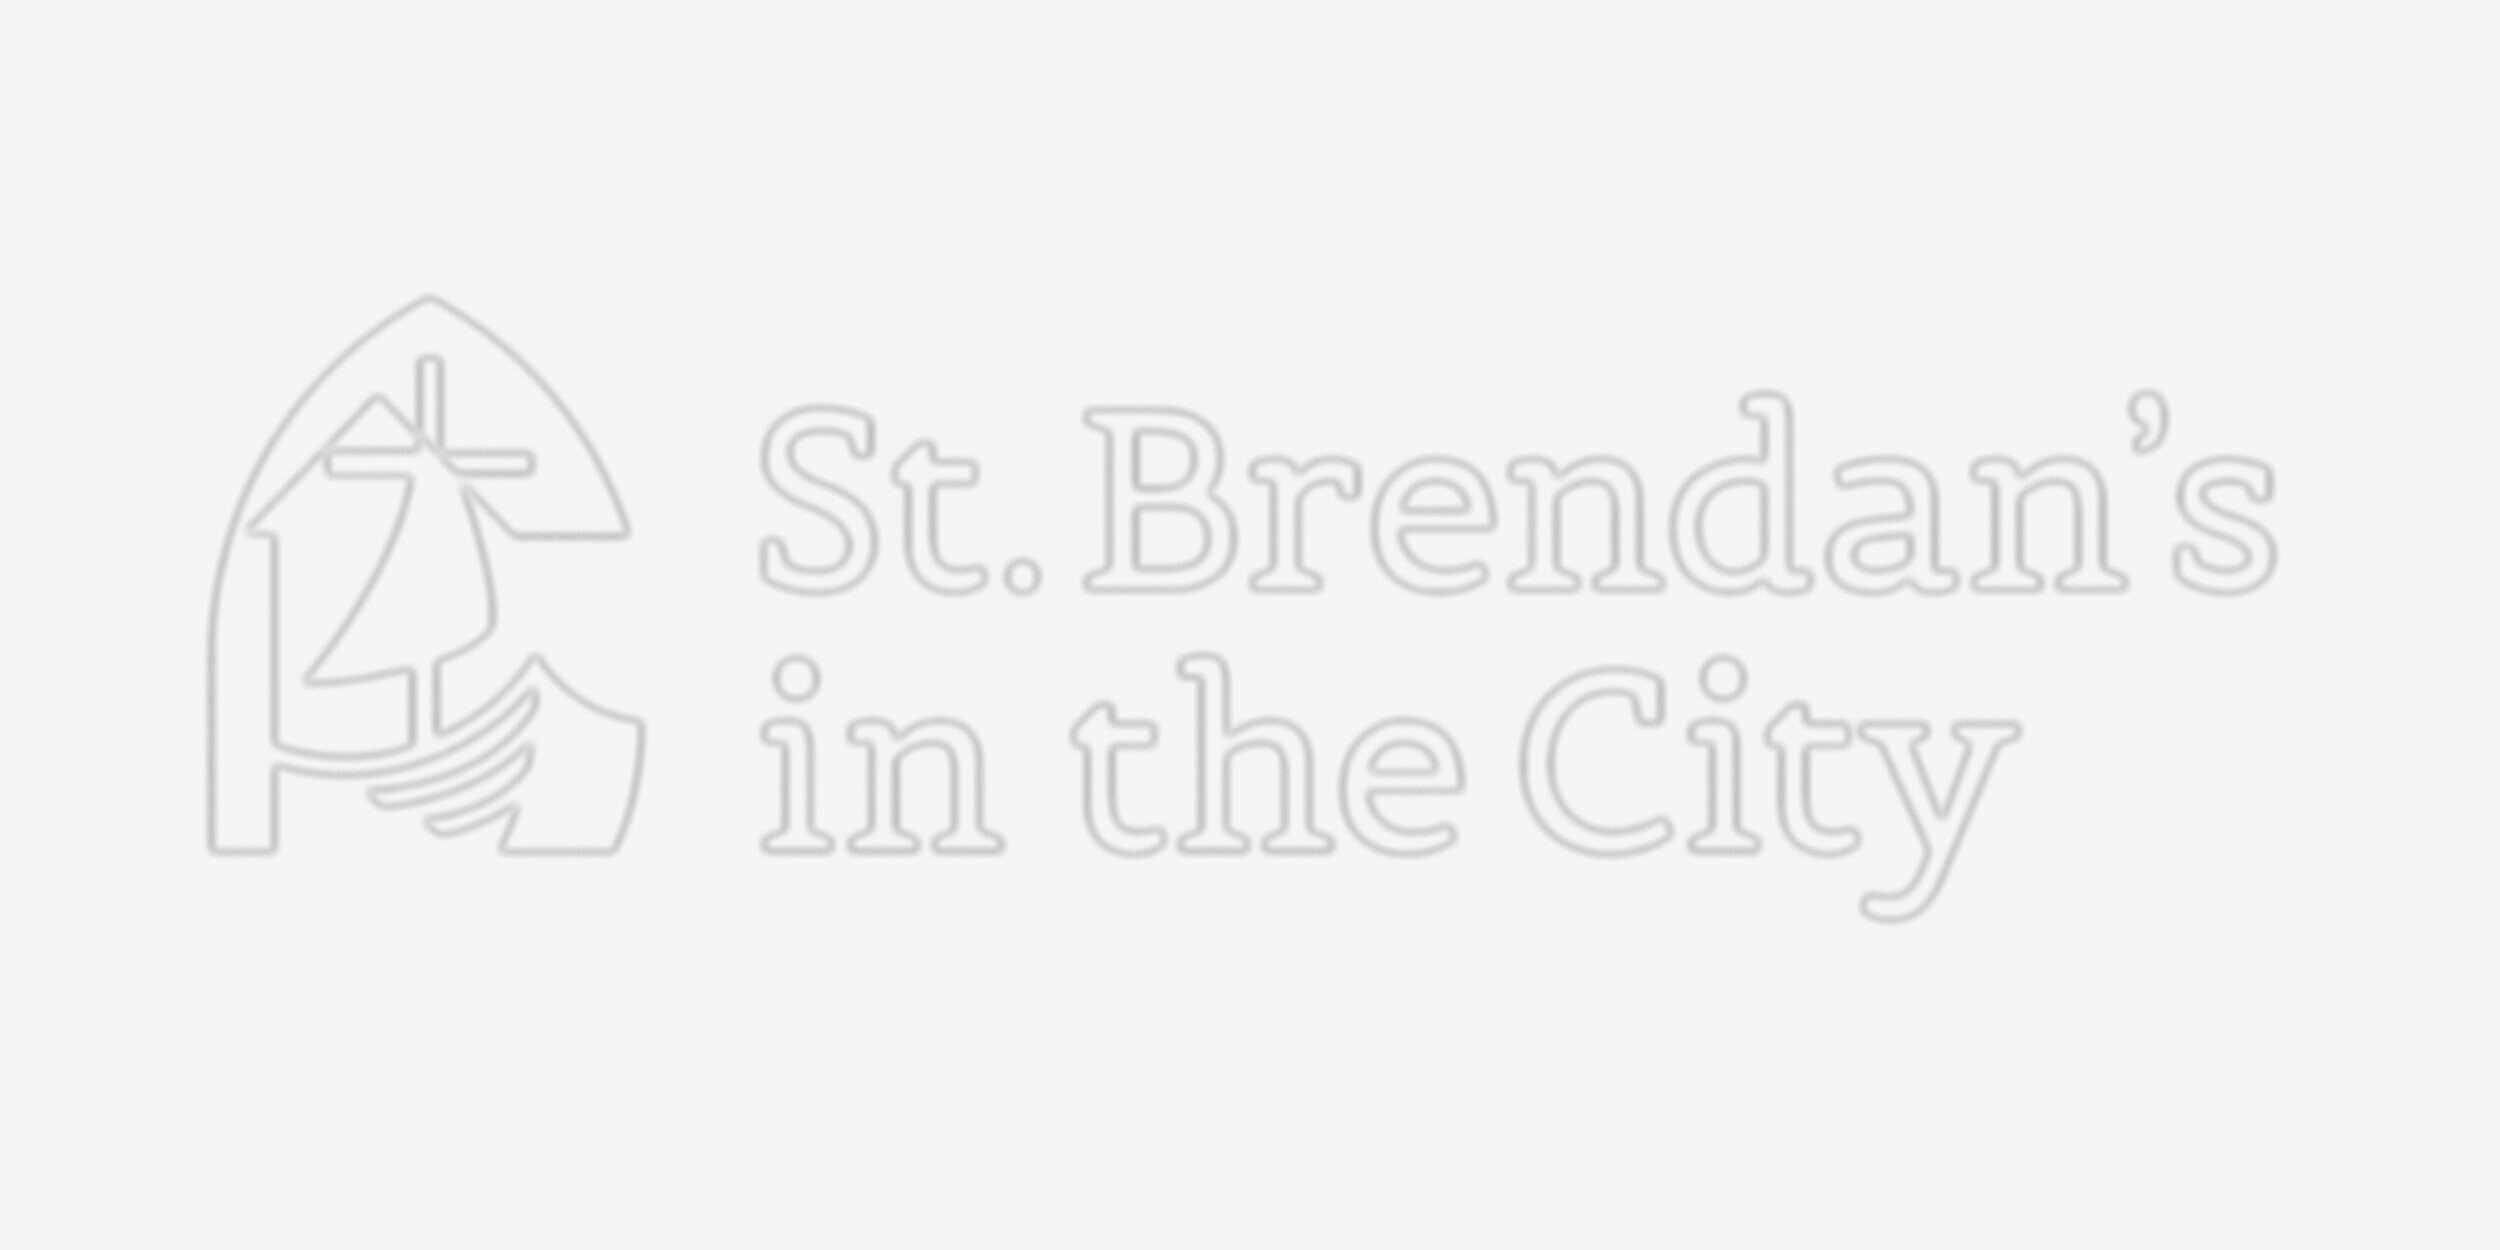 St. Brendan&#39;s in the City